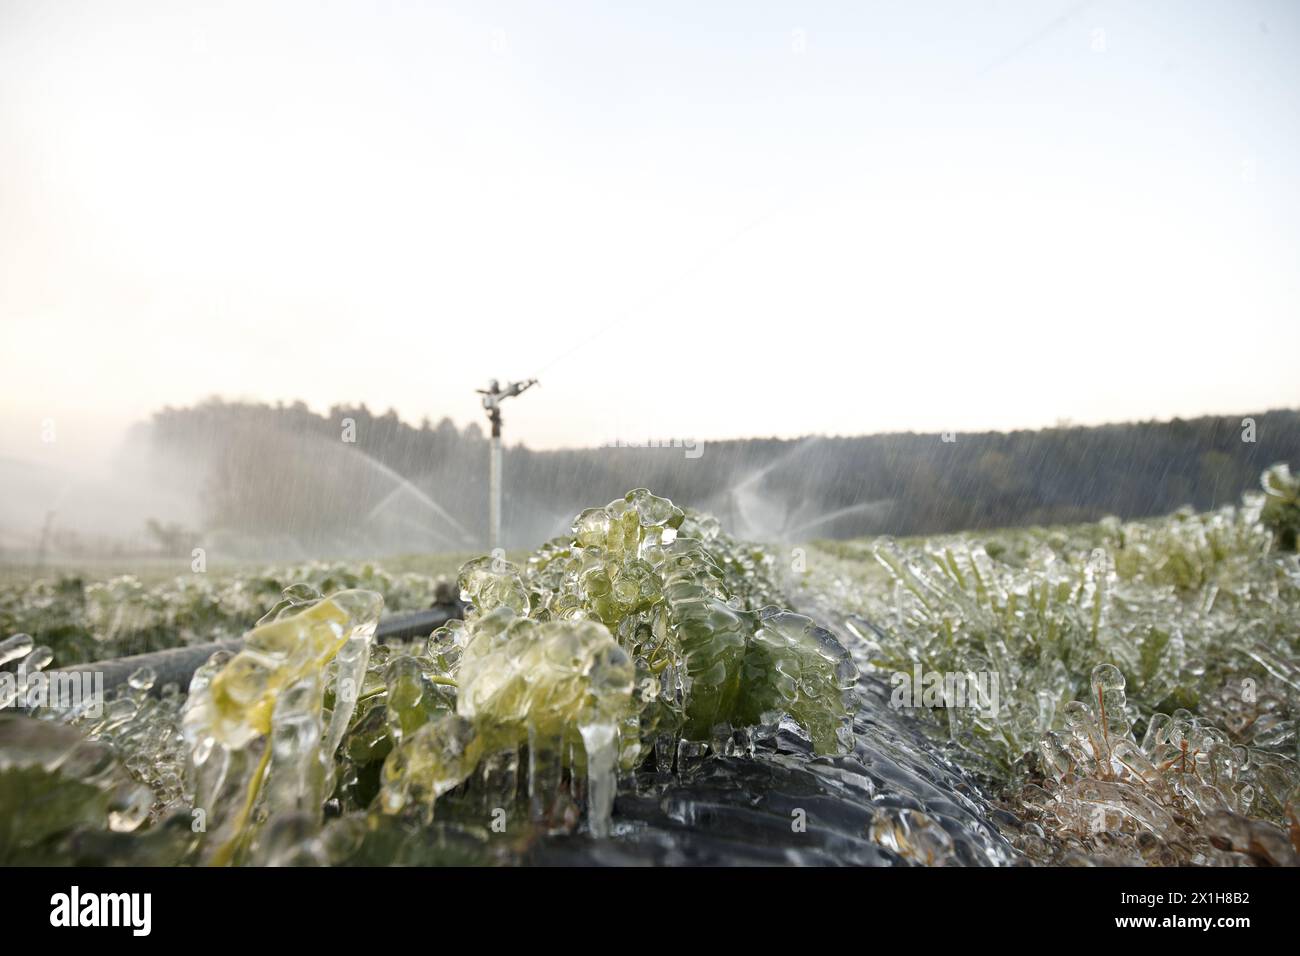 Die österreichischen Bauern kämpfen auch in diesem Jahr wieder mit niedrigen Temperaturen. Bereits in den letzten zwei Jahren gab es große Ernteausfälle, und auch in diesem Jahr scheint es aufgrund der aktuellen Kälte gleich zu sein. Mit speziellen Maßnahmen wie dem Frostschutz versuchen die Bauern, den Schaden zu begrenzen, Rum, Österreich am 2017/04/21 BILD: Wasser wird auf Pflanzen gesprüht, um sie vor Einfrieren zu schützen - 20170421 PD0691 - Rechteinfo: Rights Managed (RM) Stockfoto